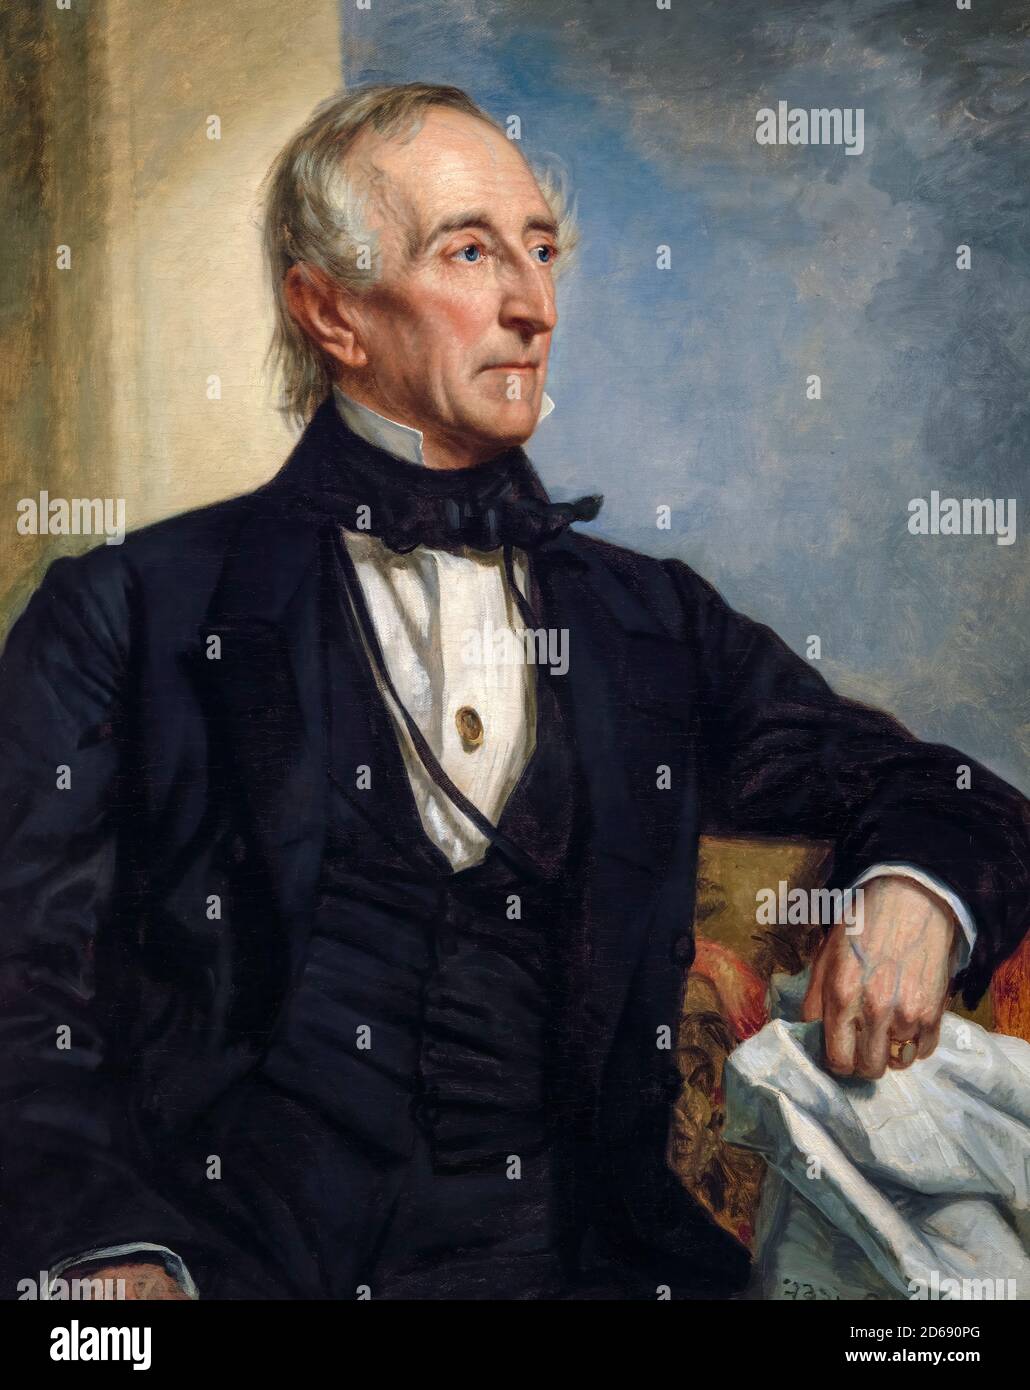 John Tyler (1790-1862), dixième président des États-Unis, portrait peint par George Peter Alexander Healy, 1859 Banque D'Images